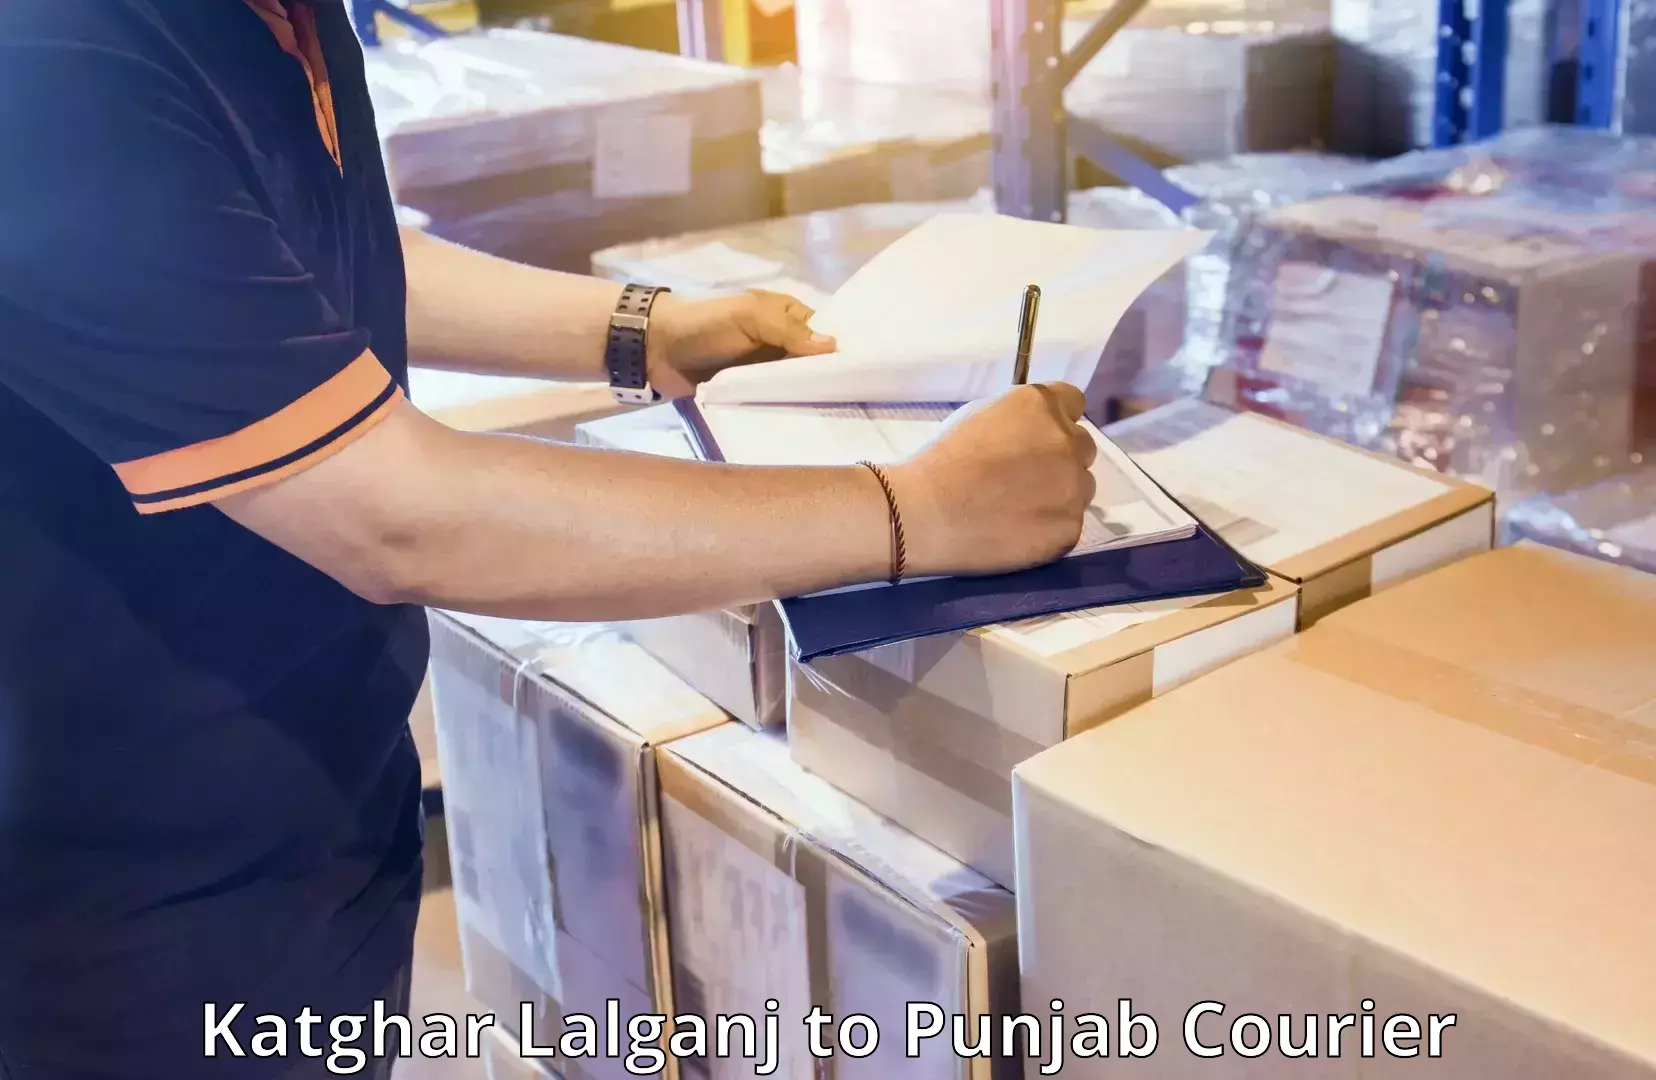 Global baggage shipping Katghar Lalganj to Punjab